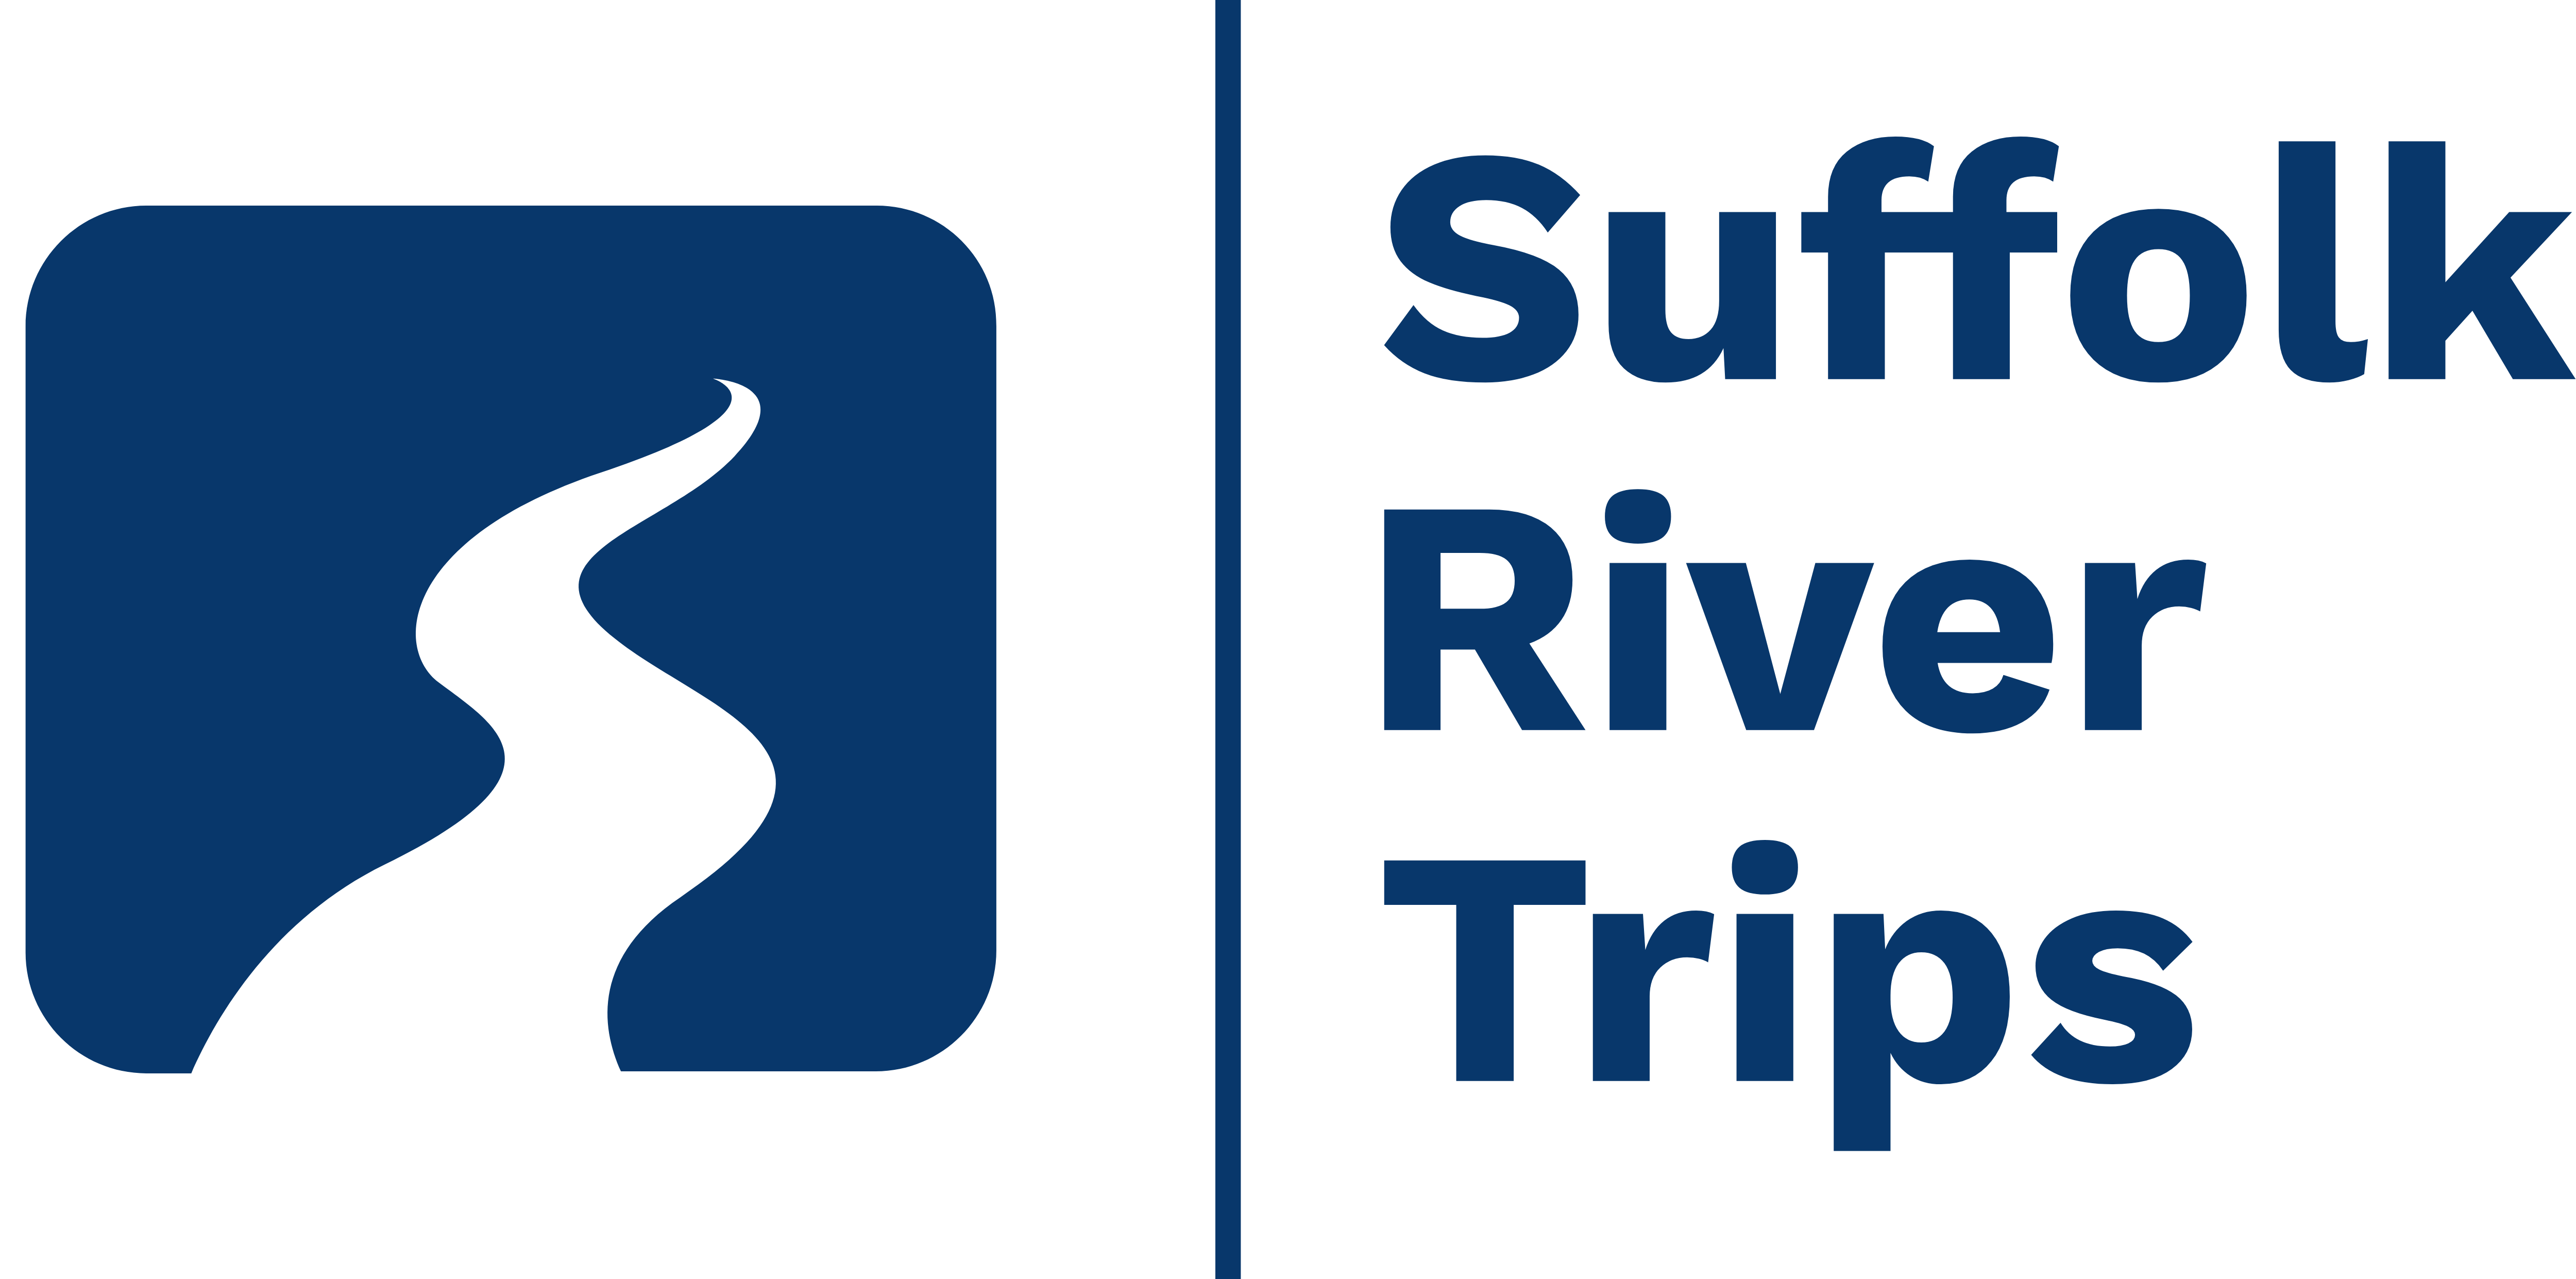 Suffolk River Trips logo: blue on white